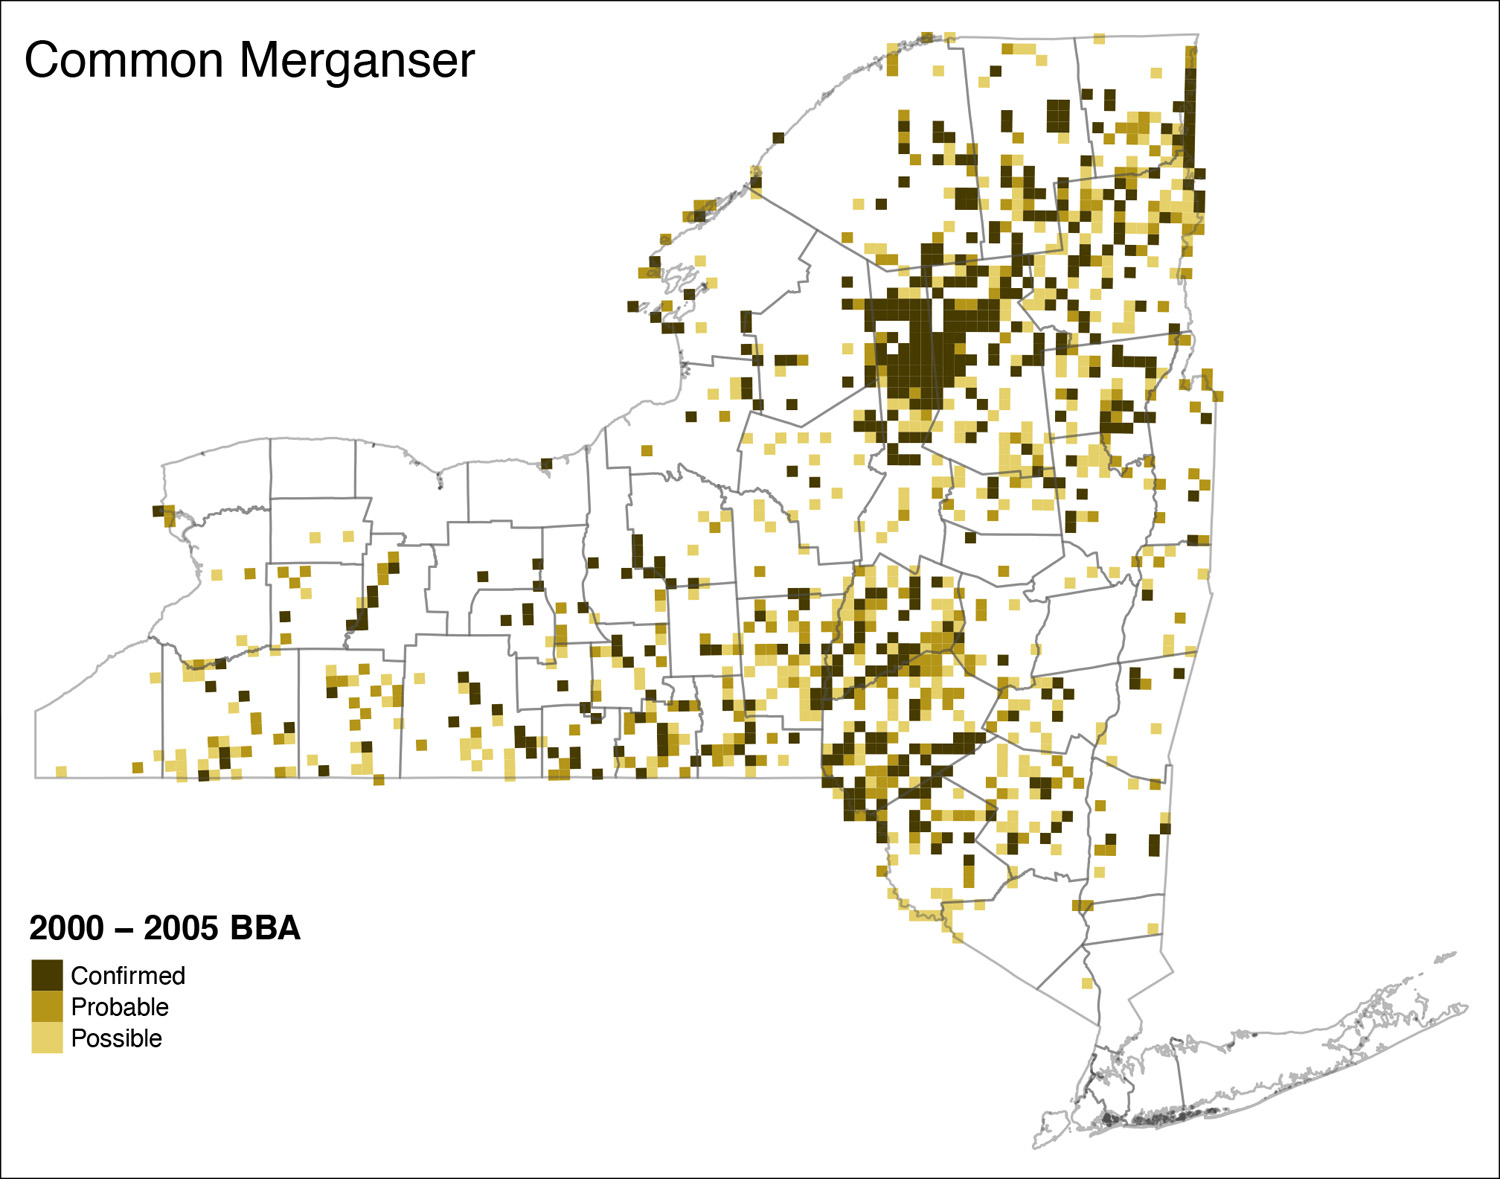 Common Merganser Atlas 2 Distribution